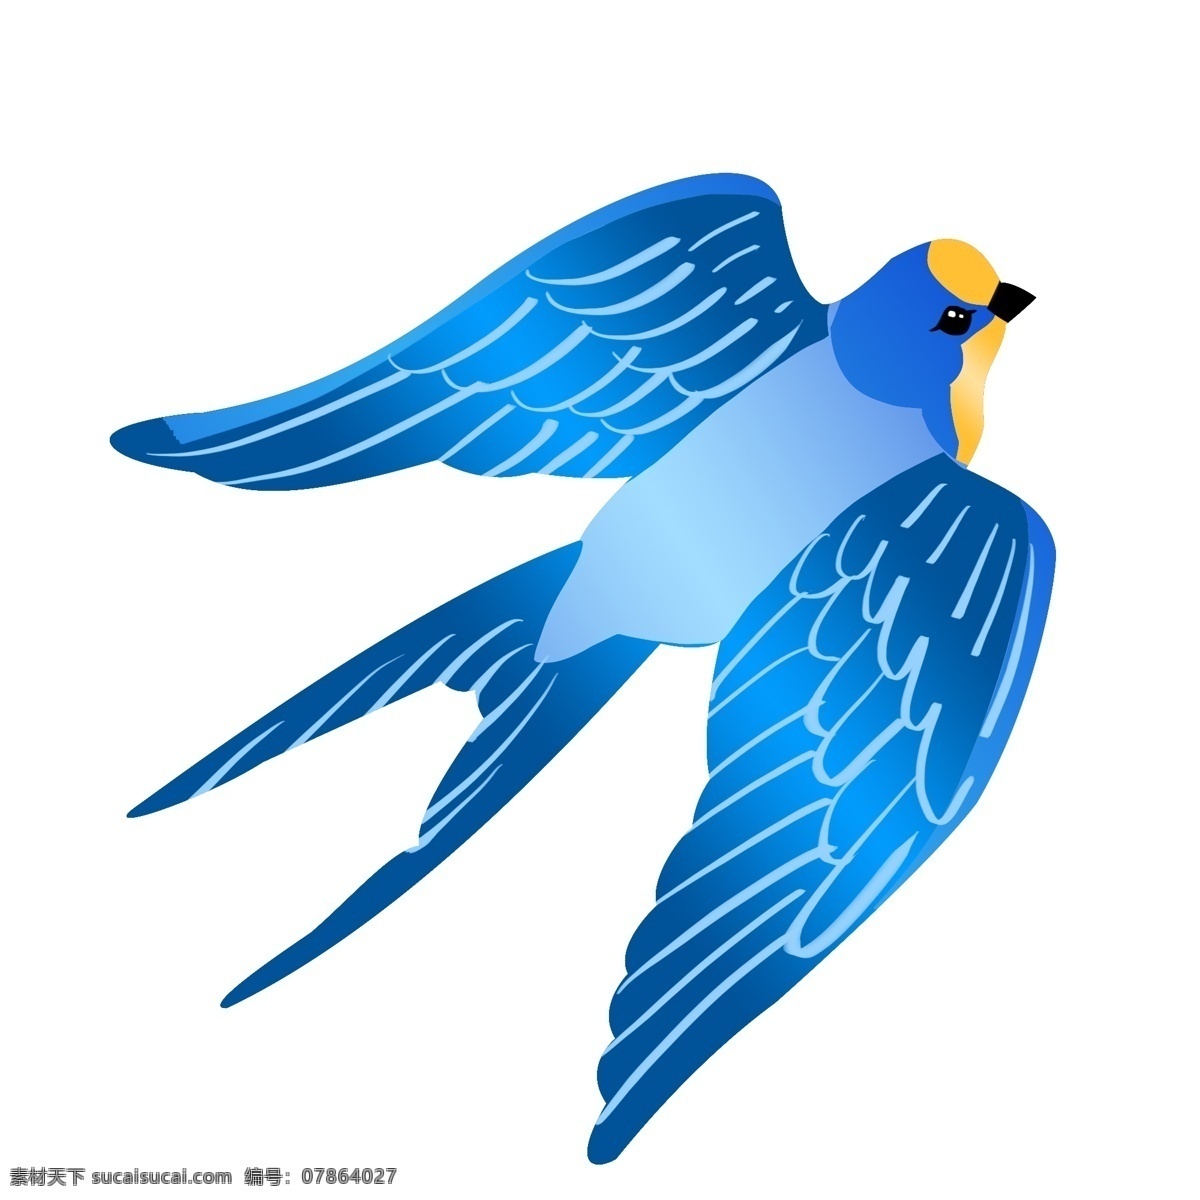 蓝色 飞翔 燕子 插画 展开的翅膀 鸟 动物 手绘燕子 春季 漂亮的燕子 飞燕插画 蓝色燕子 煽动的翅膀